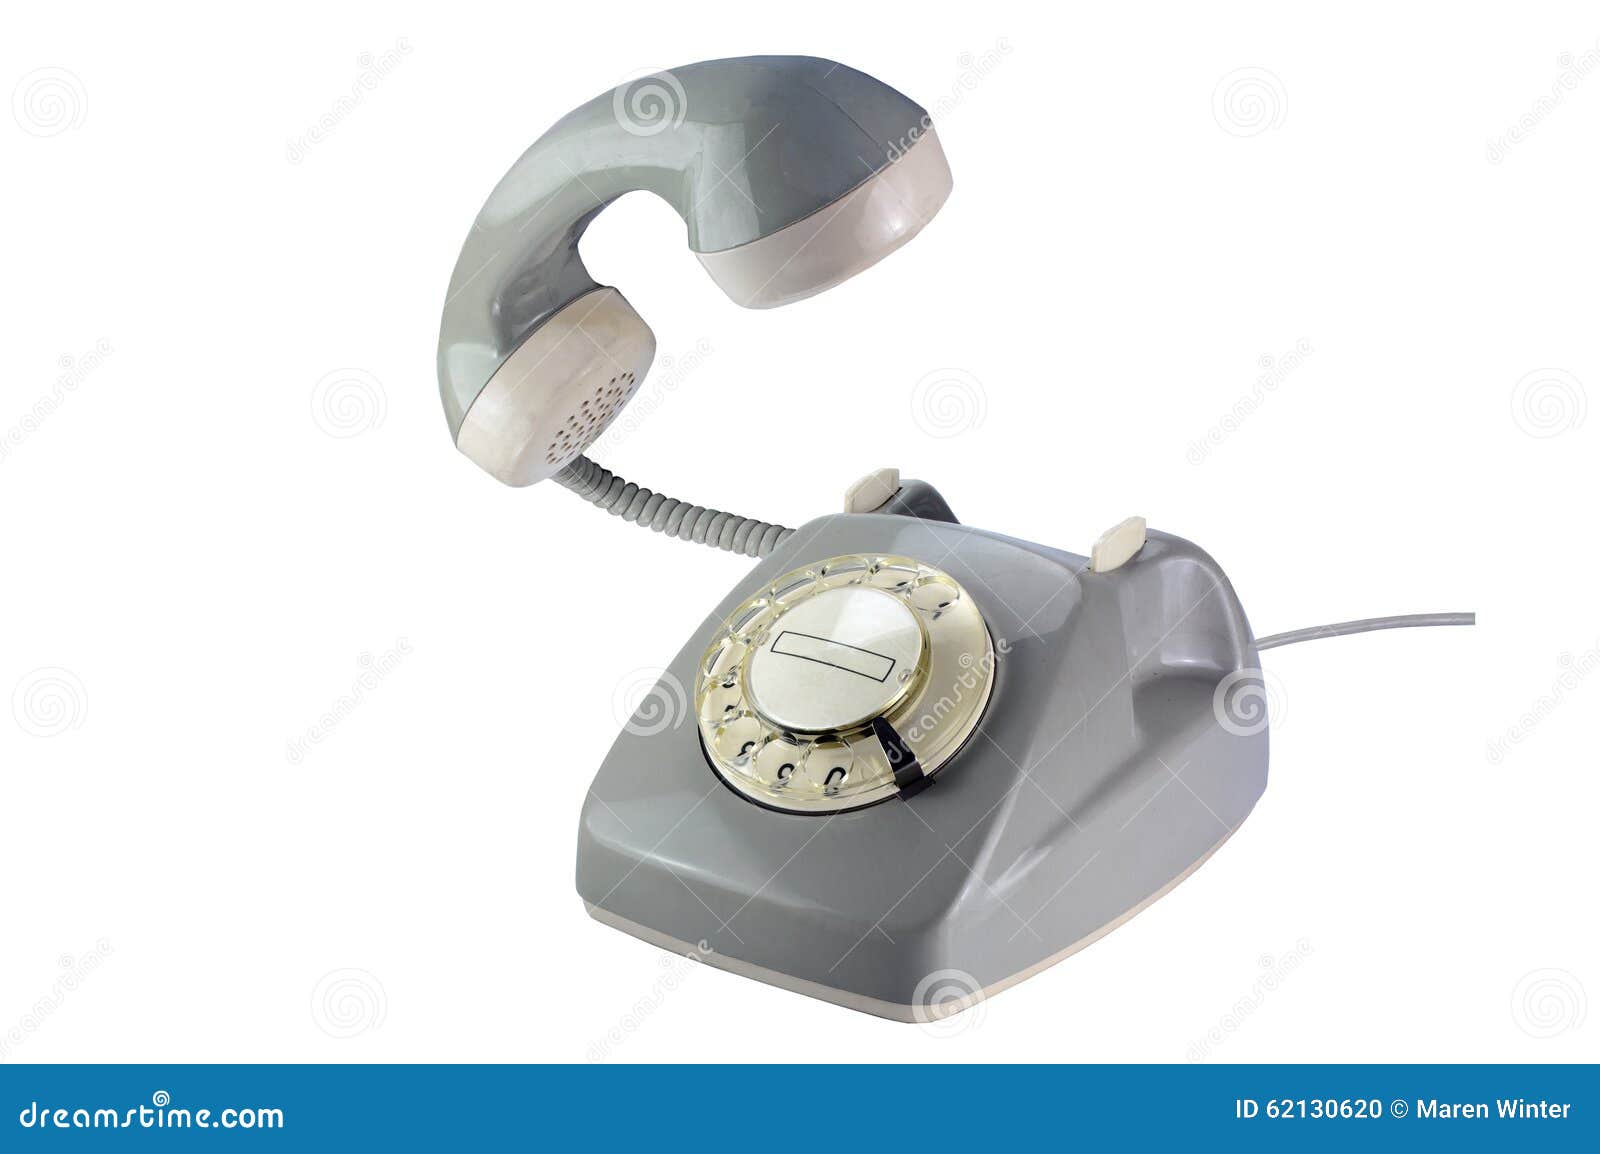 Il telefono di quadrante rotatorio grigio con il ricevitore telefonico di volo ha isolato la o. Telefono di quadrante rotatorio d'annata nel gray con il ricevitore telefonico di volo isolato su un fondo bianco